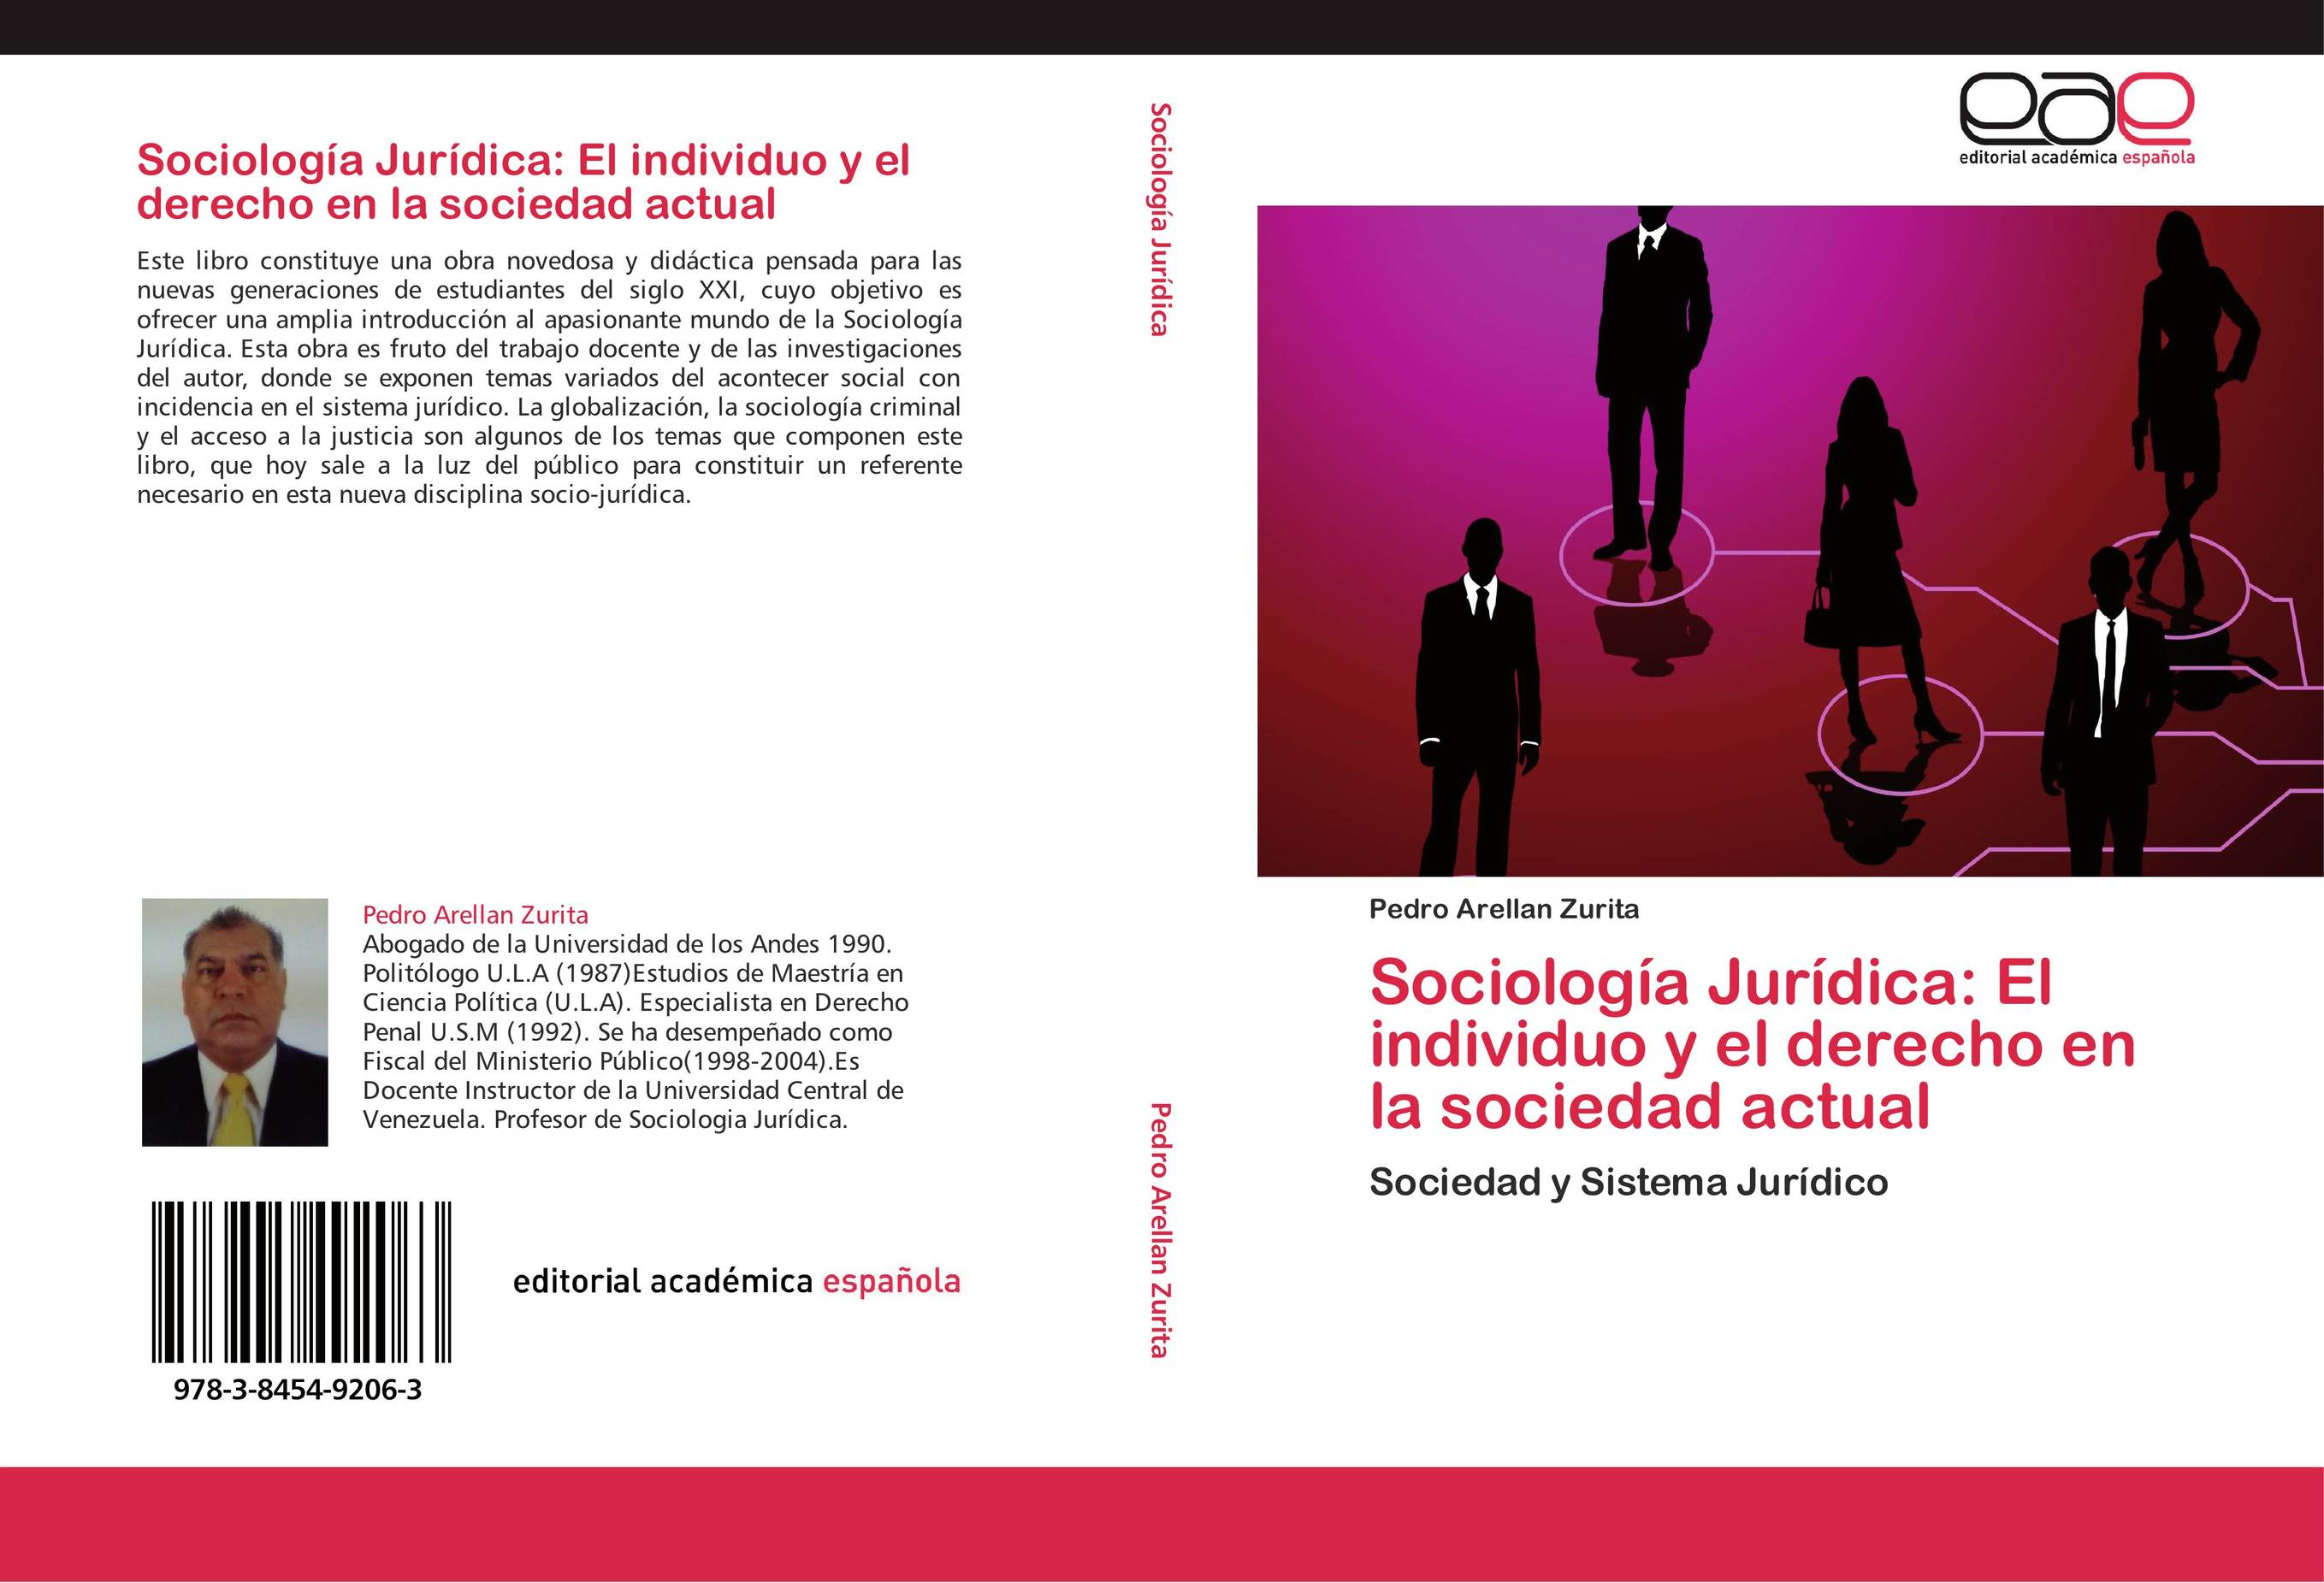 Sociología Jurídica: El individuo y el derecho en la sociedad actual